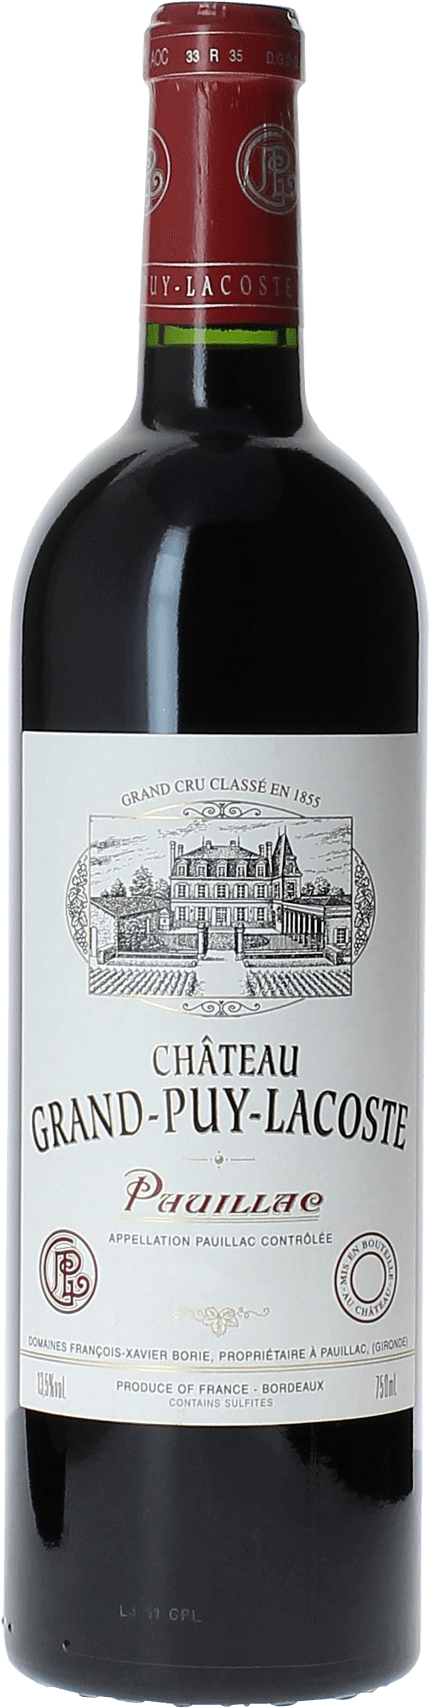 Grand puy lacoste 2018 5 me Grand cru class Pauillac, Bordeaux rouge